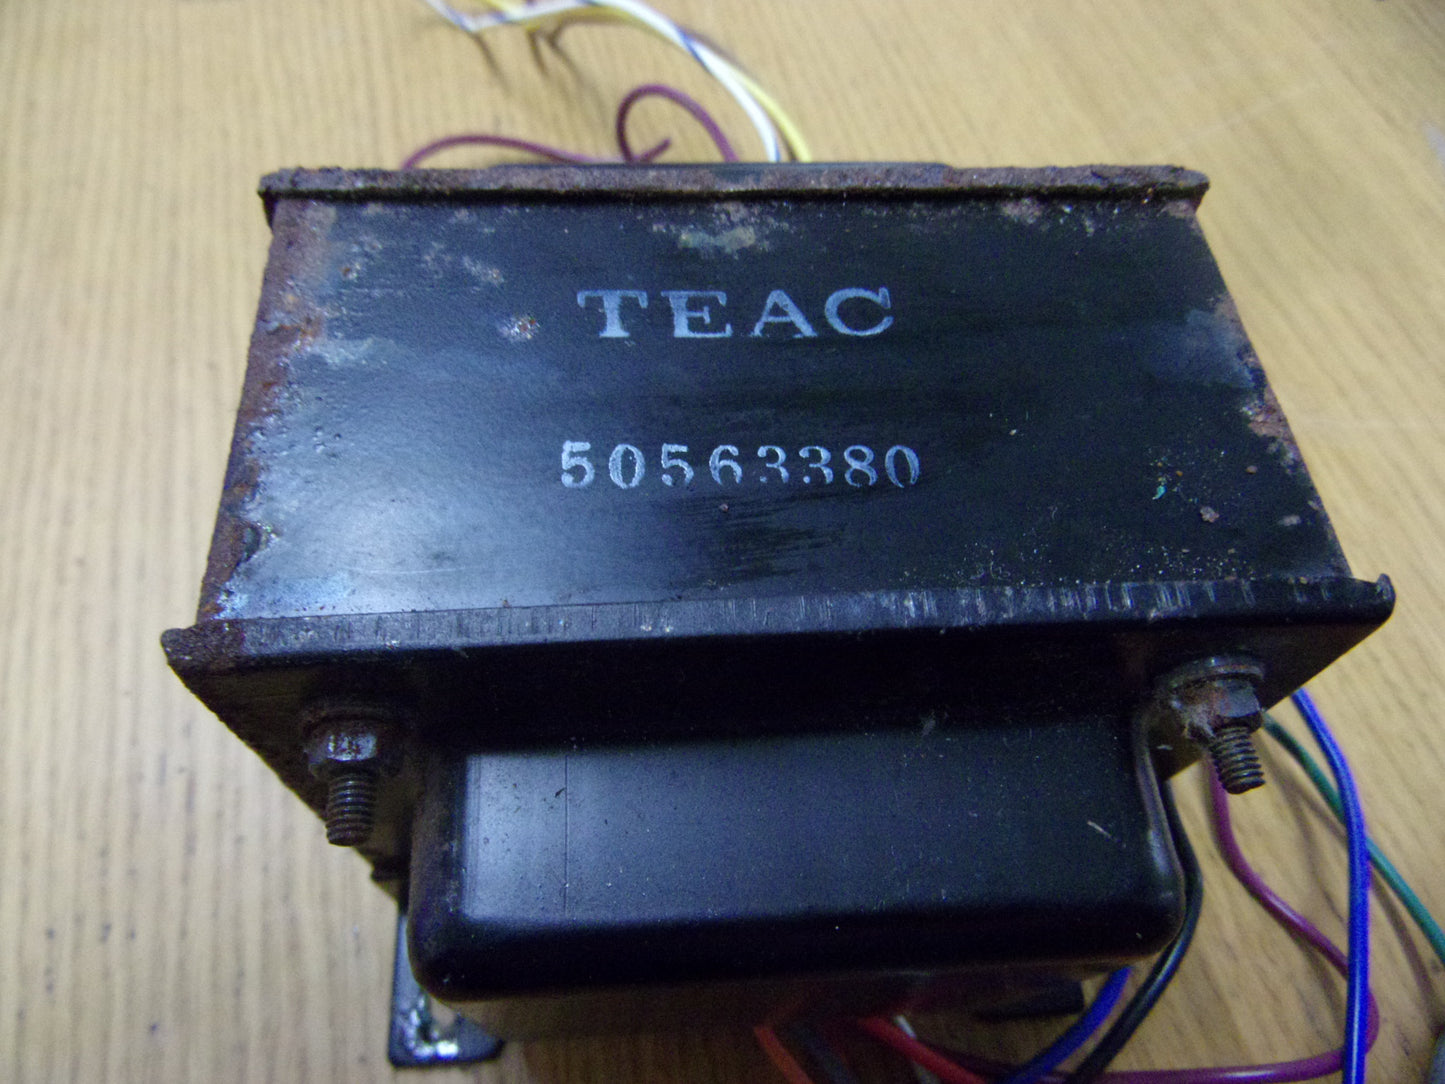 Teac A-4300SX transformer 50563380